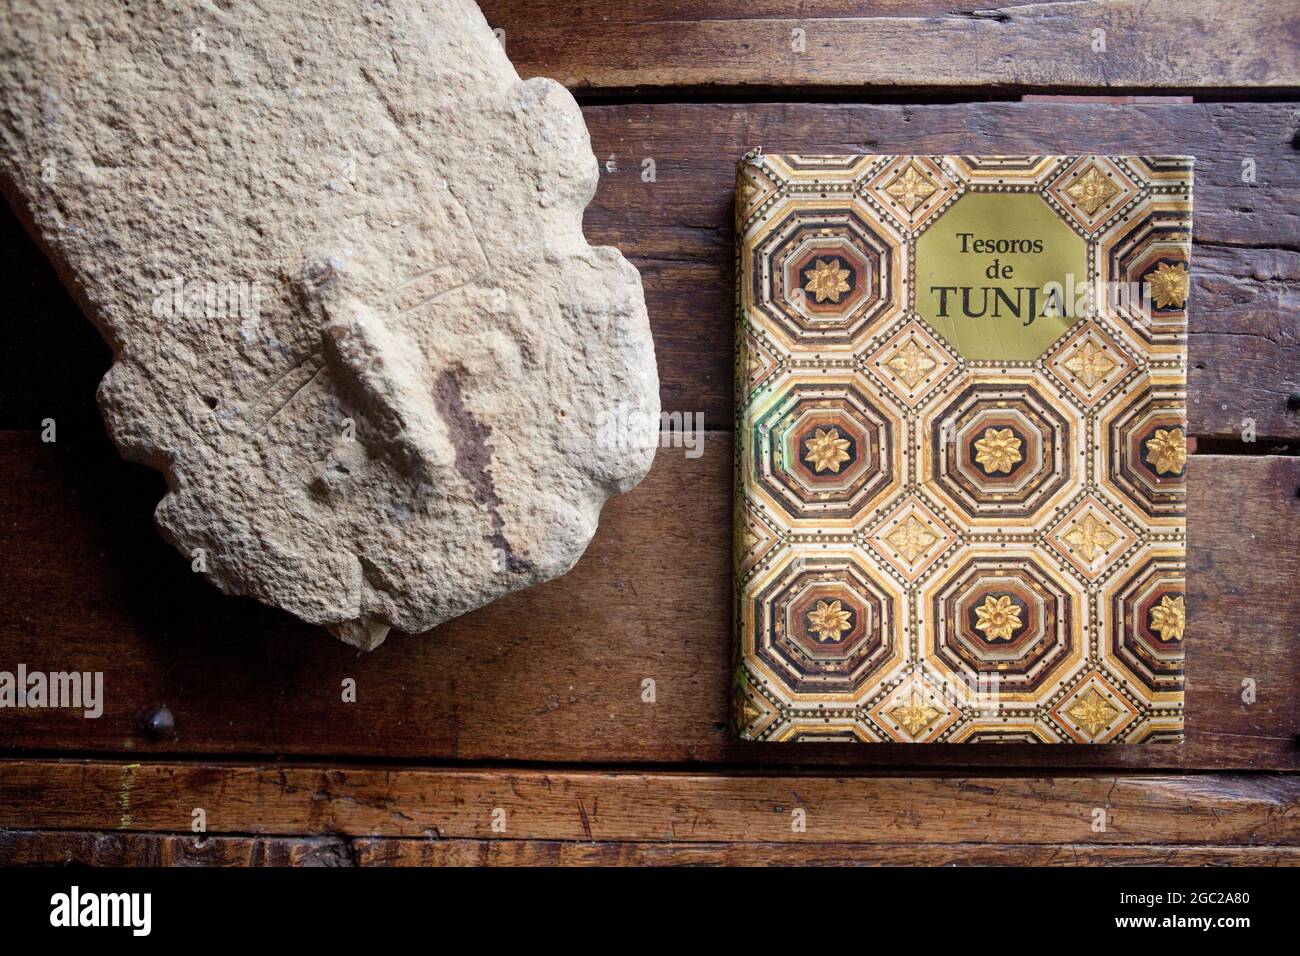 Tesoros de Tunja archéologie colombienne livre de table basse. Banque D'Images